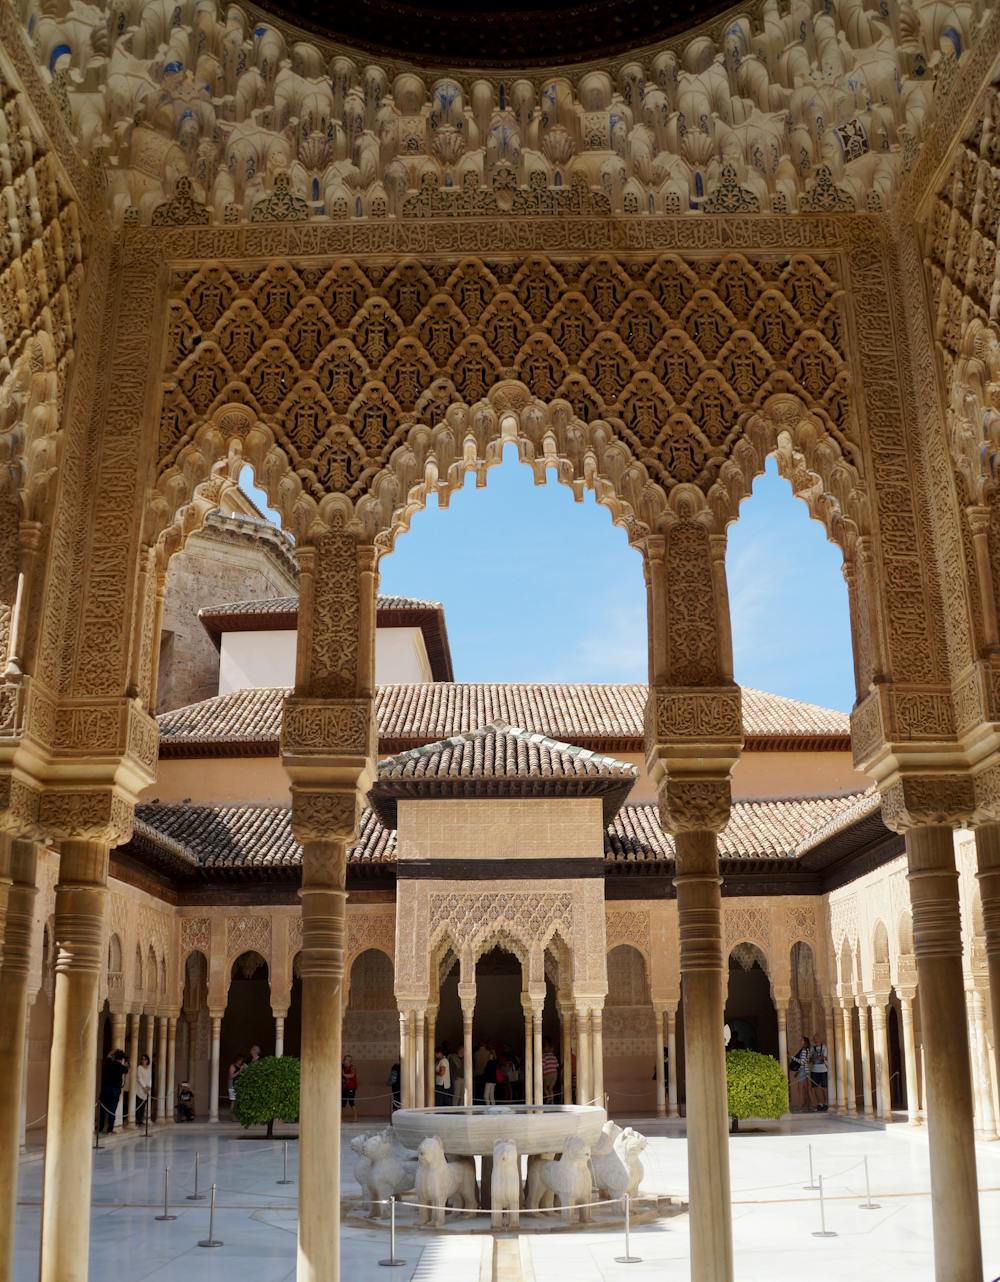 La Alhambra aún guarda secretos: descubrimientos en el Patio de los Leones